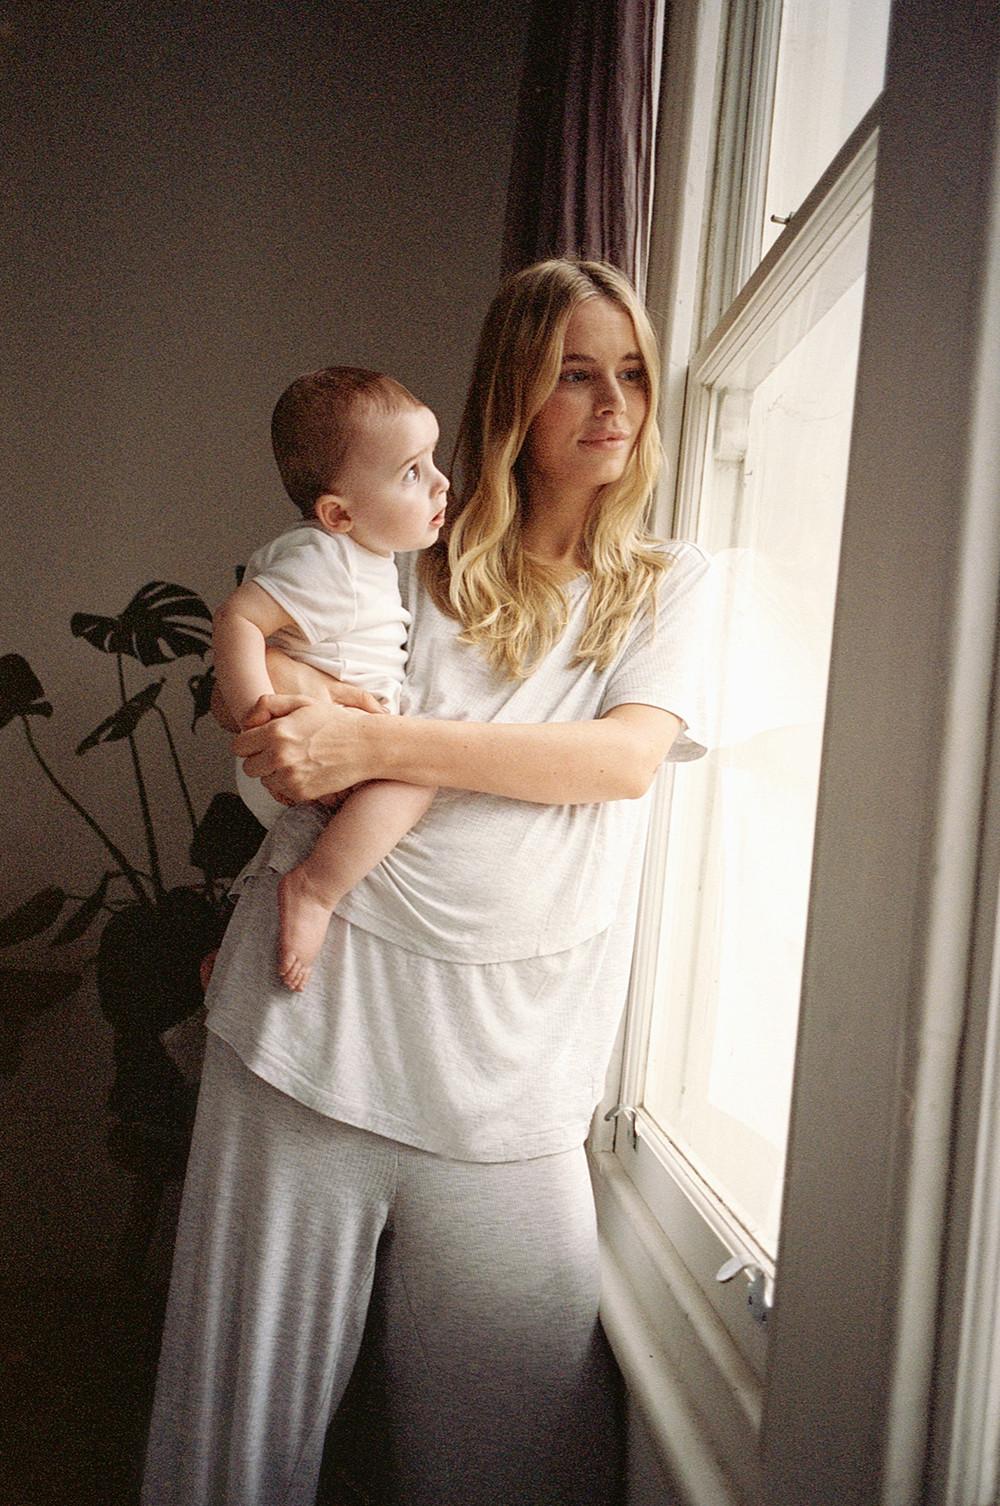 model in zwangerschapspyjama met grijze broek en witte top